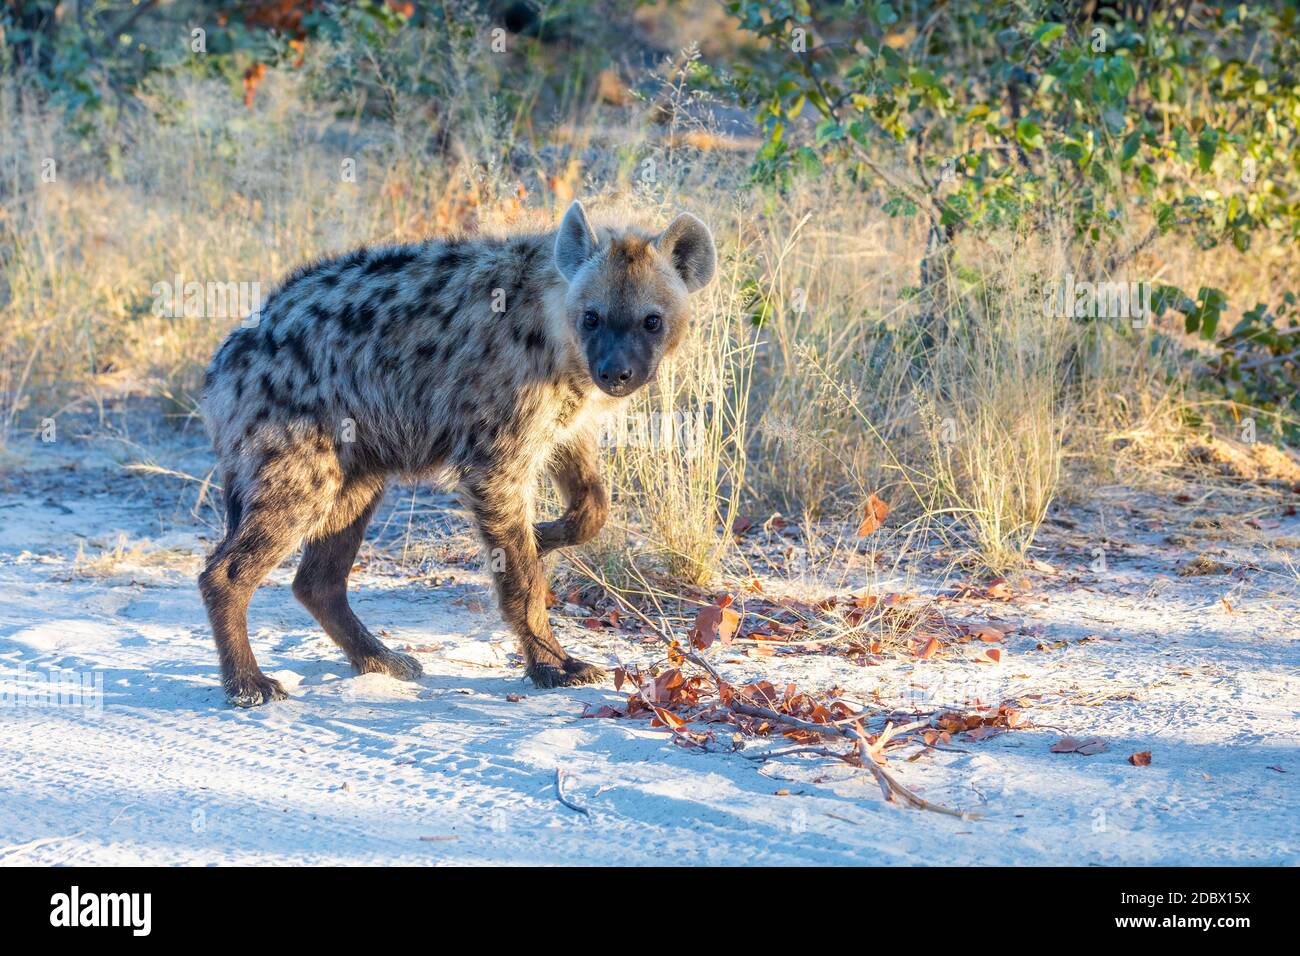 Niedliches Baby der gepunkteten Hyäne (Hyena hyena) im natürlichen Lebensraum moremi Wildreservat. Botswana Afrika Safari Tierwelt Stockfoto